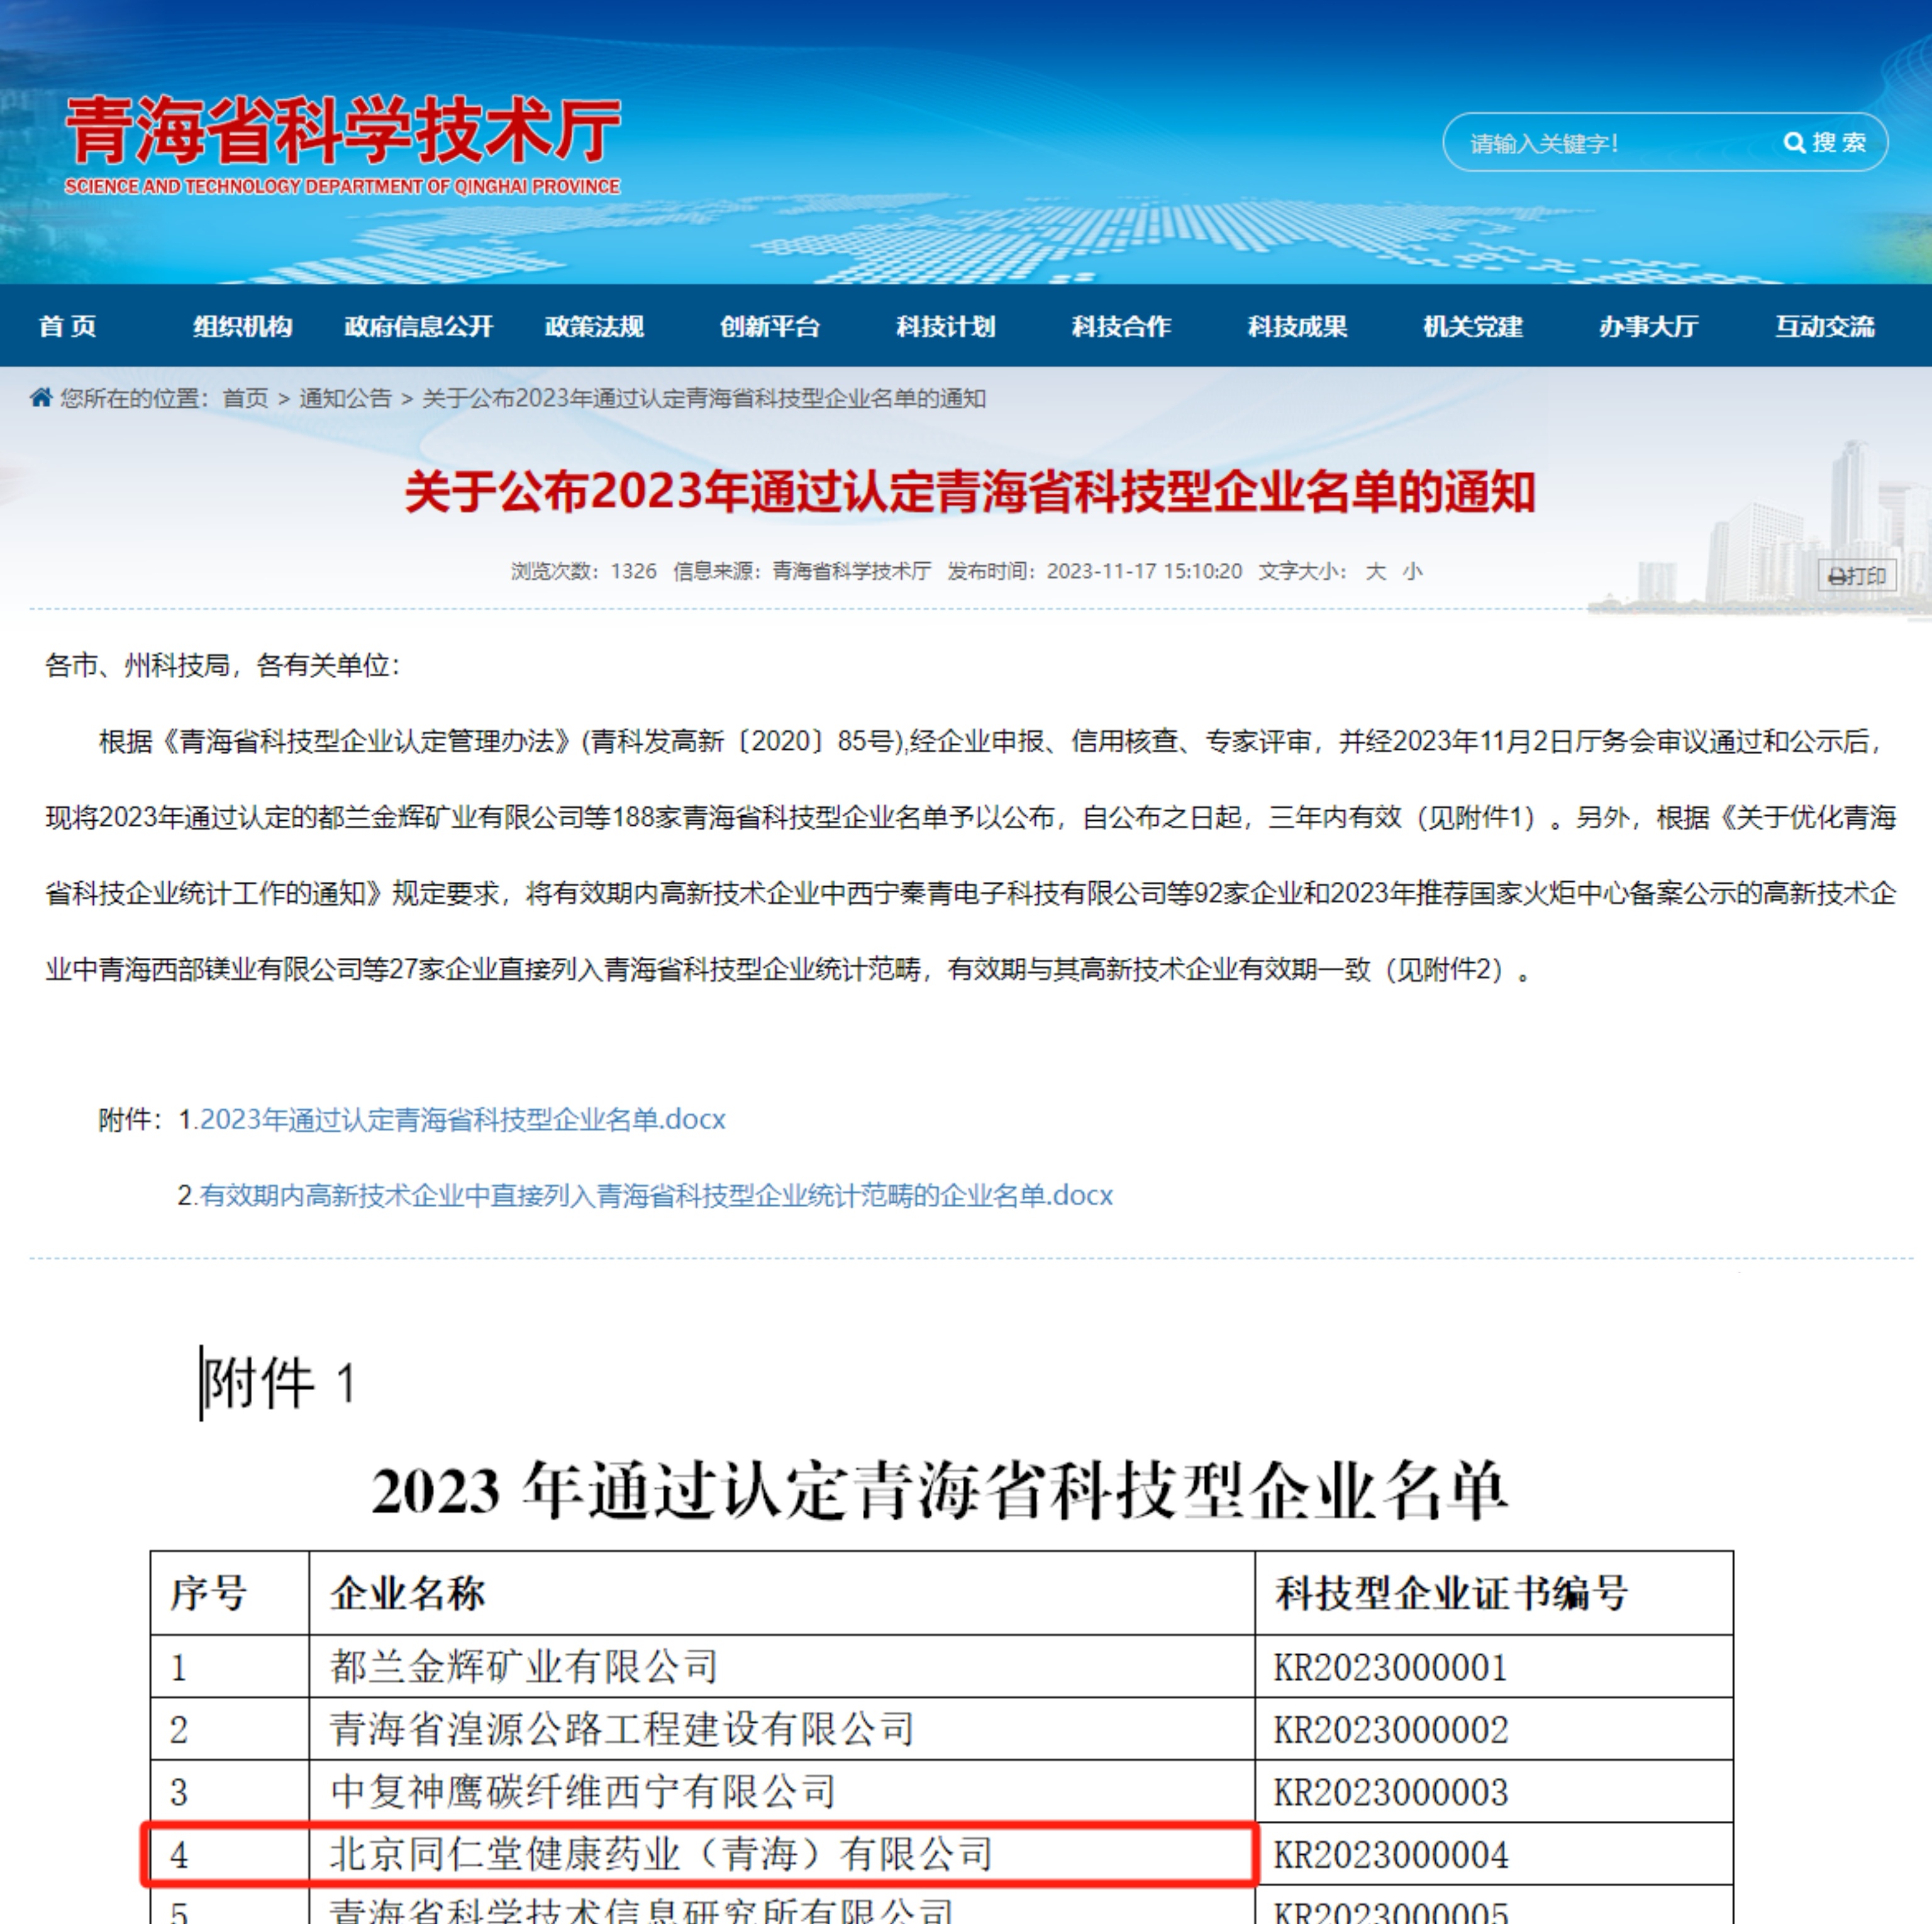 健康药业青海公司被青海省科学技术厅认定为 “青海省科技型企业”